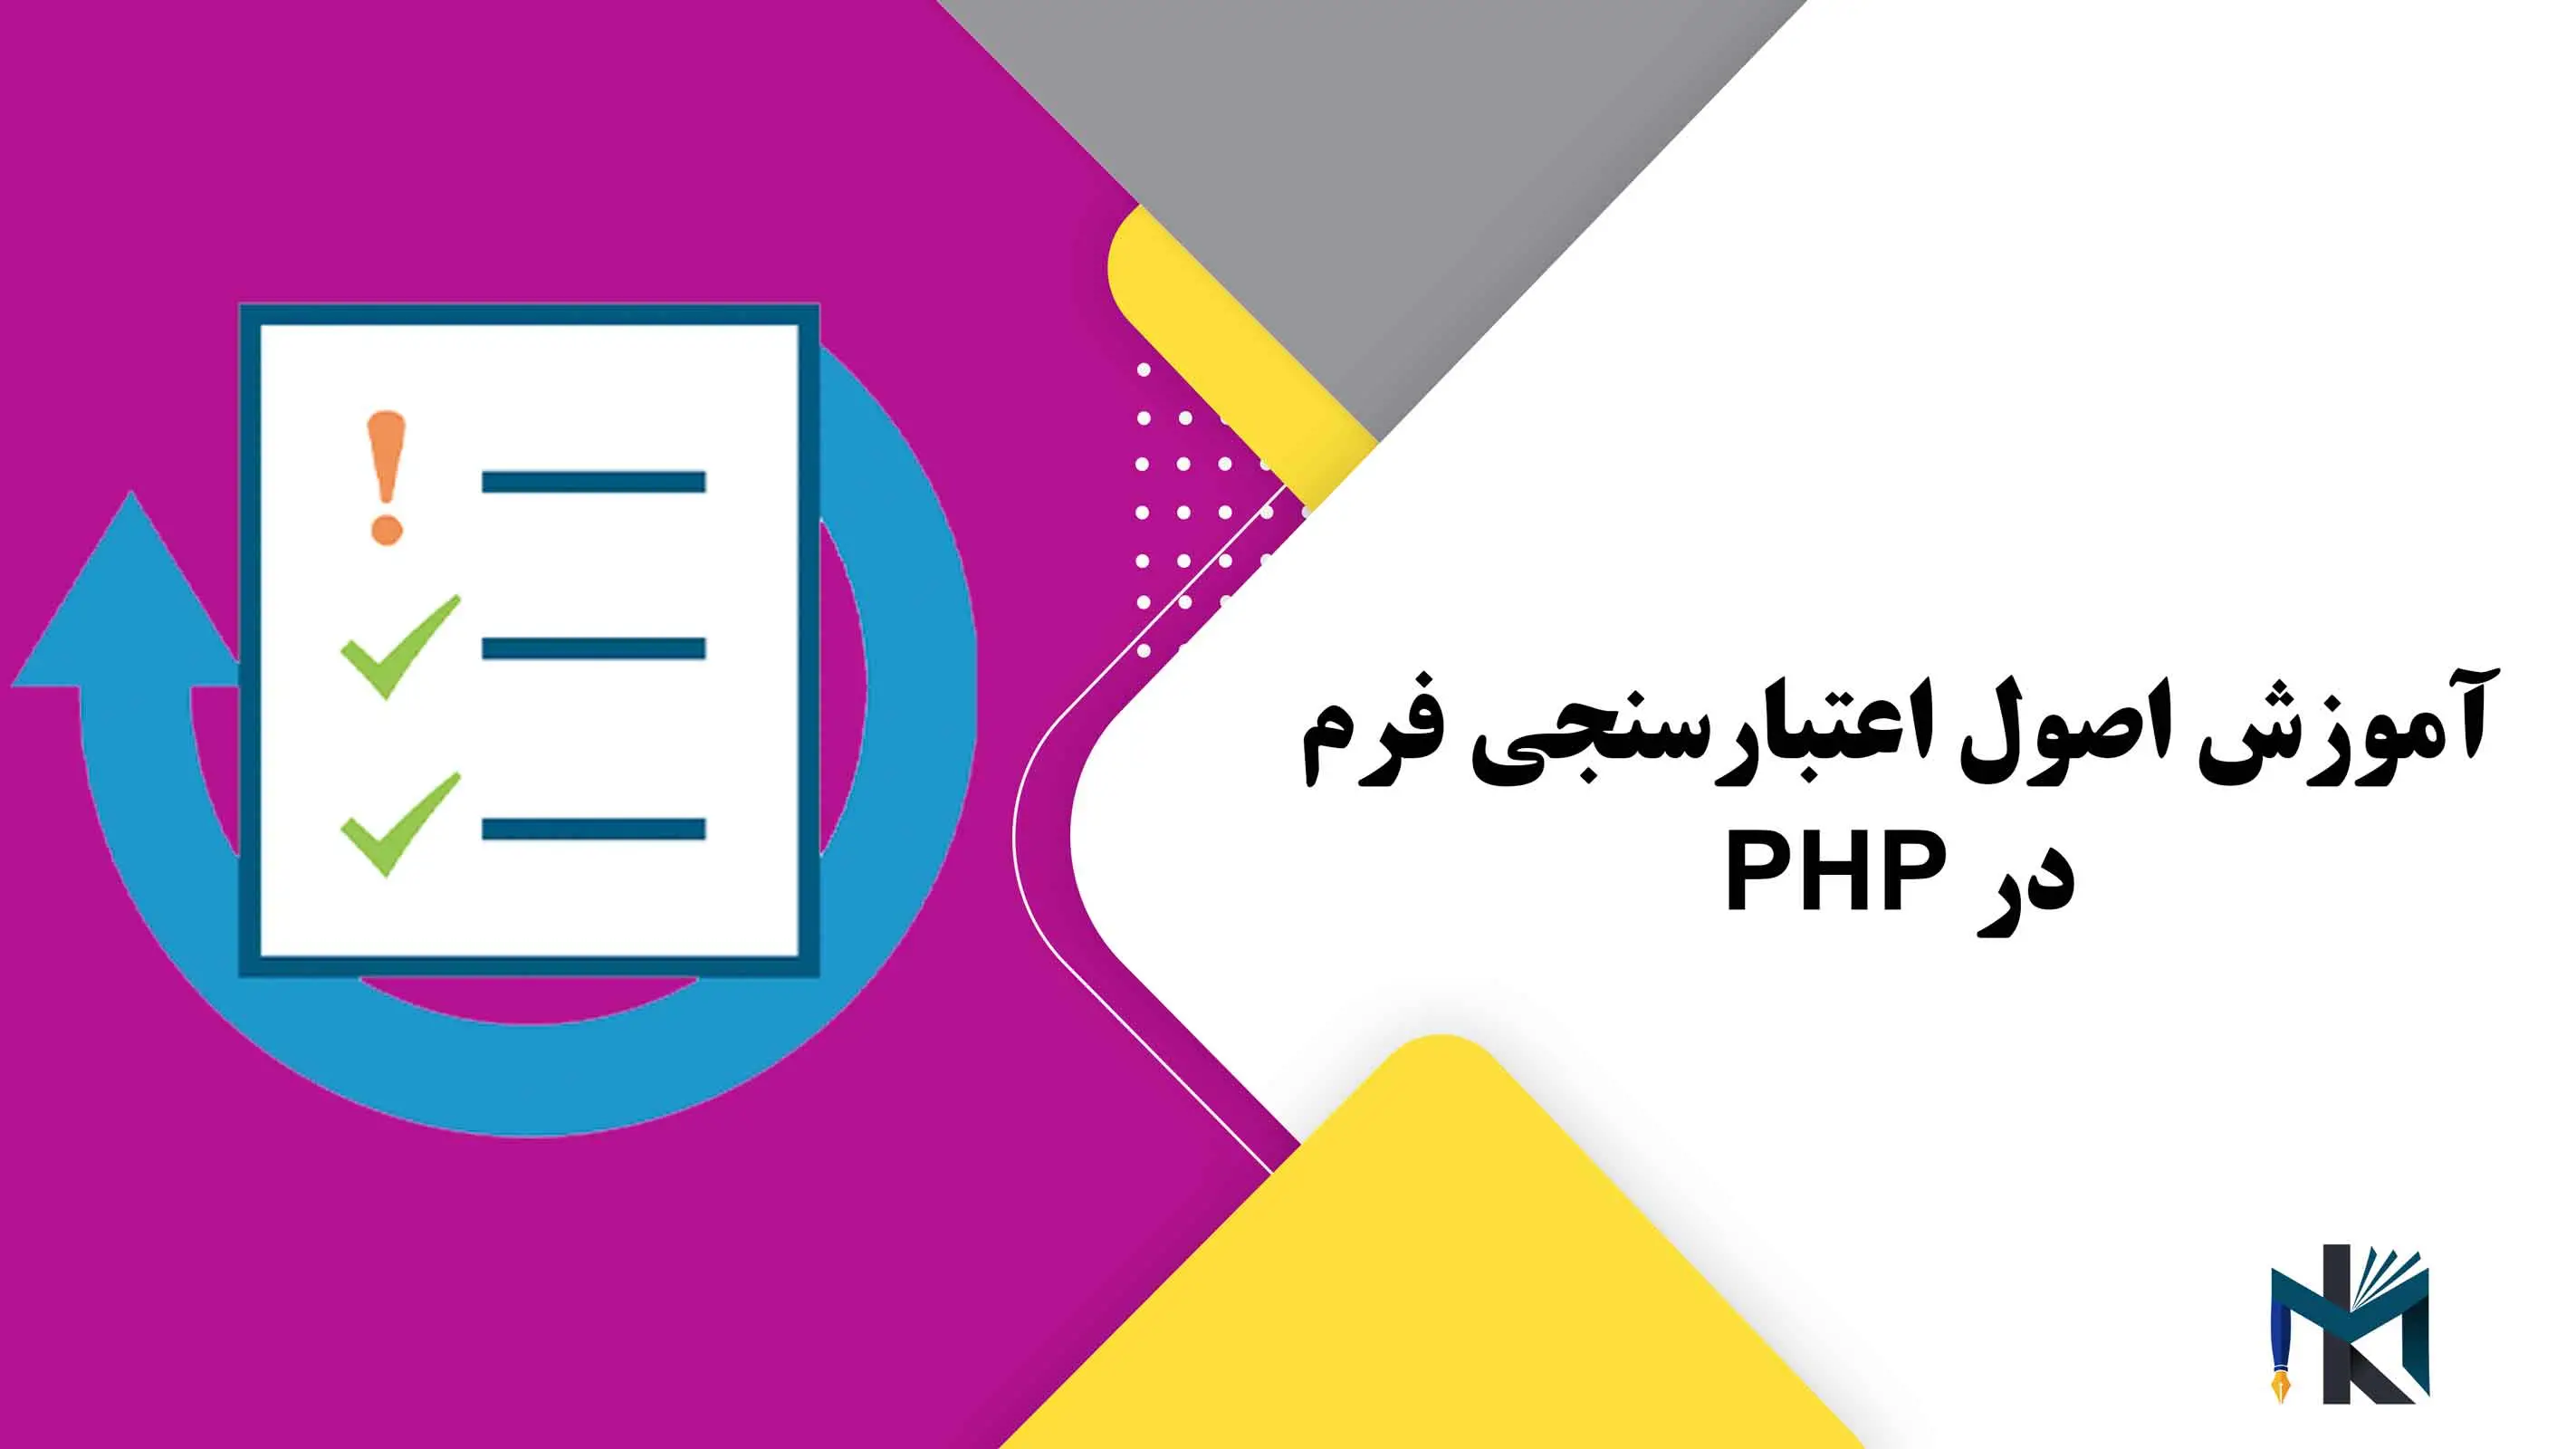 درس بیستم: آموزش اصول اعتبارسنجی فرم در PHP